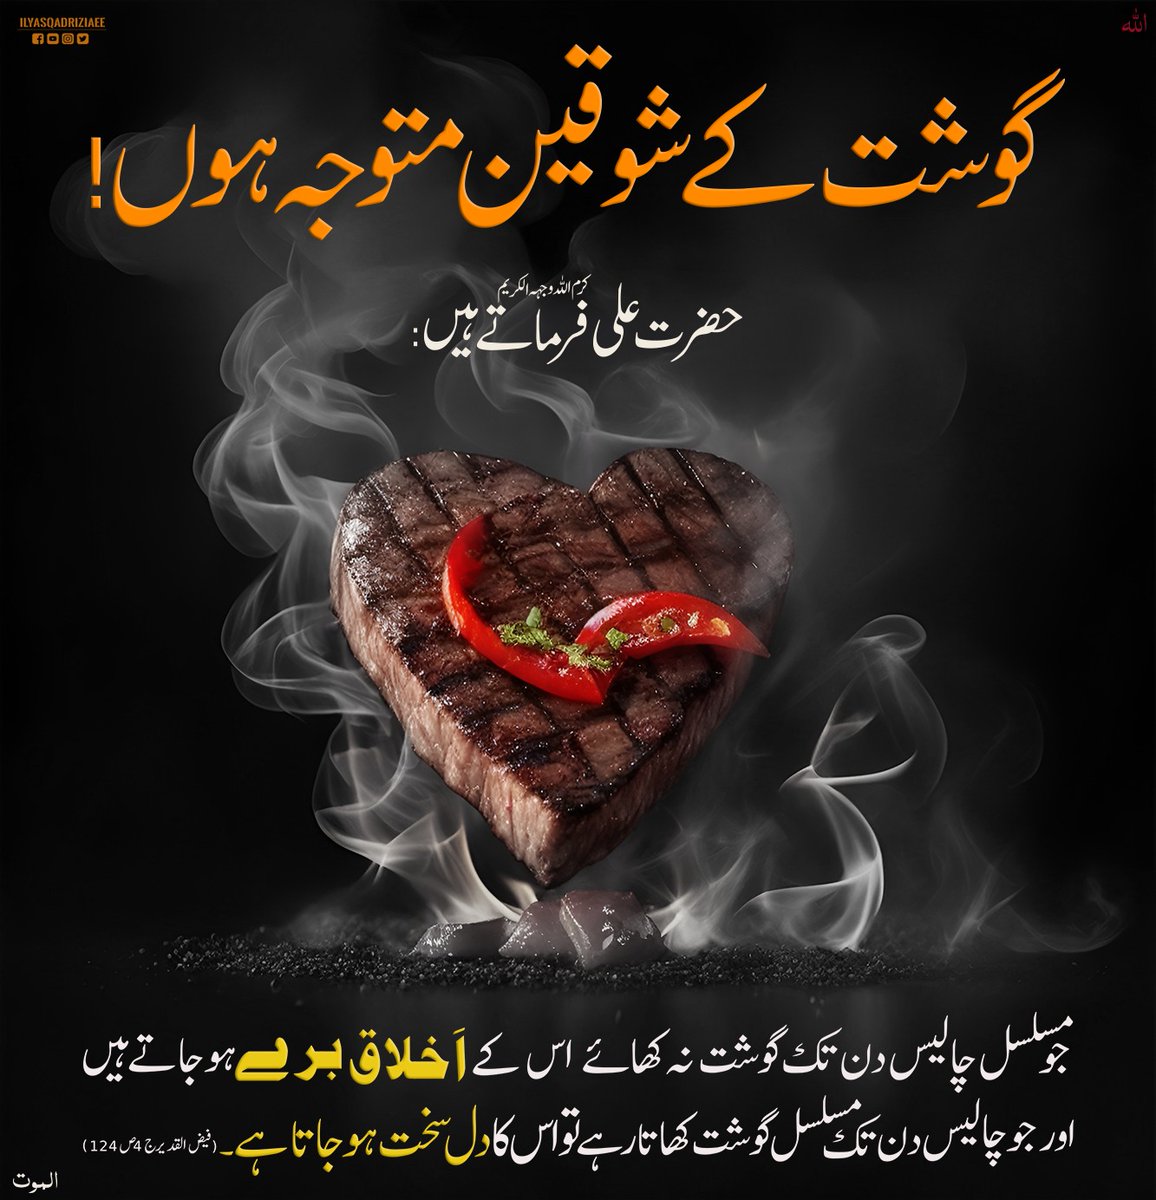 گوشت کے شوقین متوجہ ہوں!
#EidUlAdha2023 
#BBQ